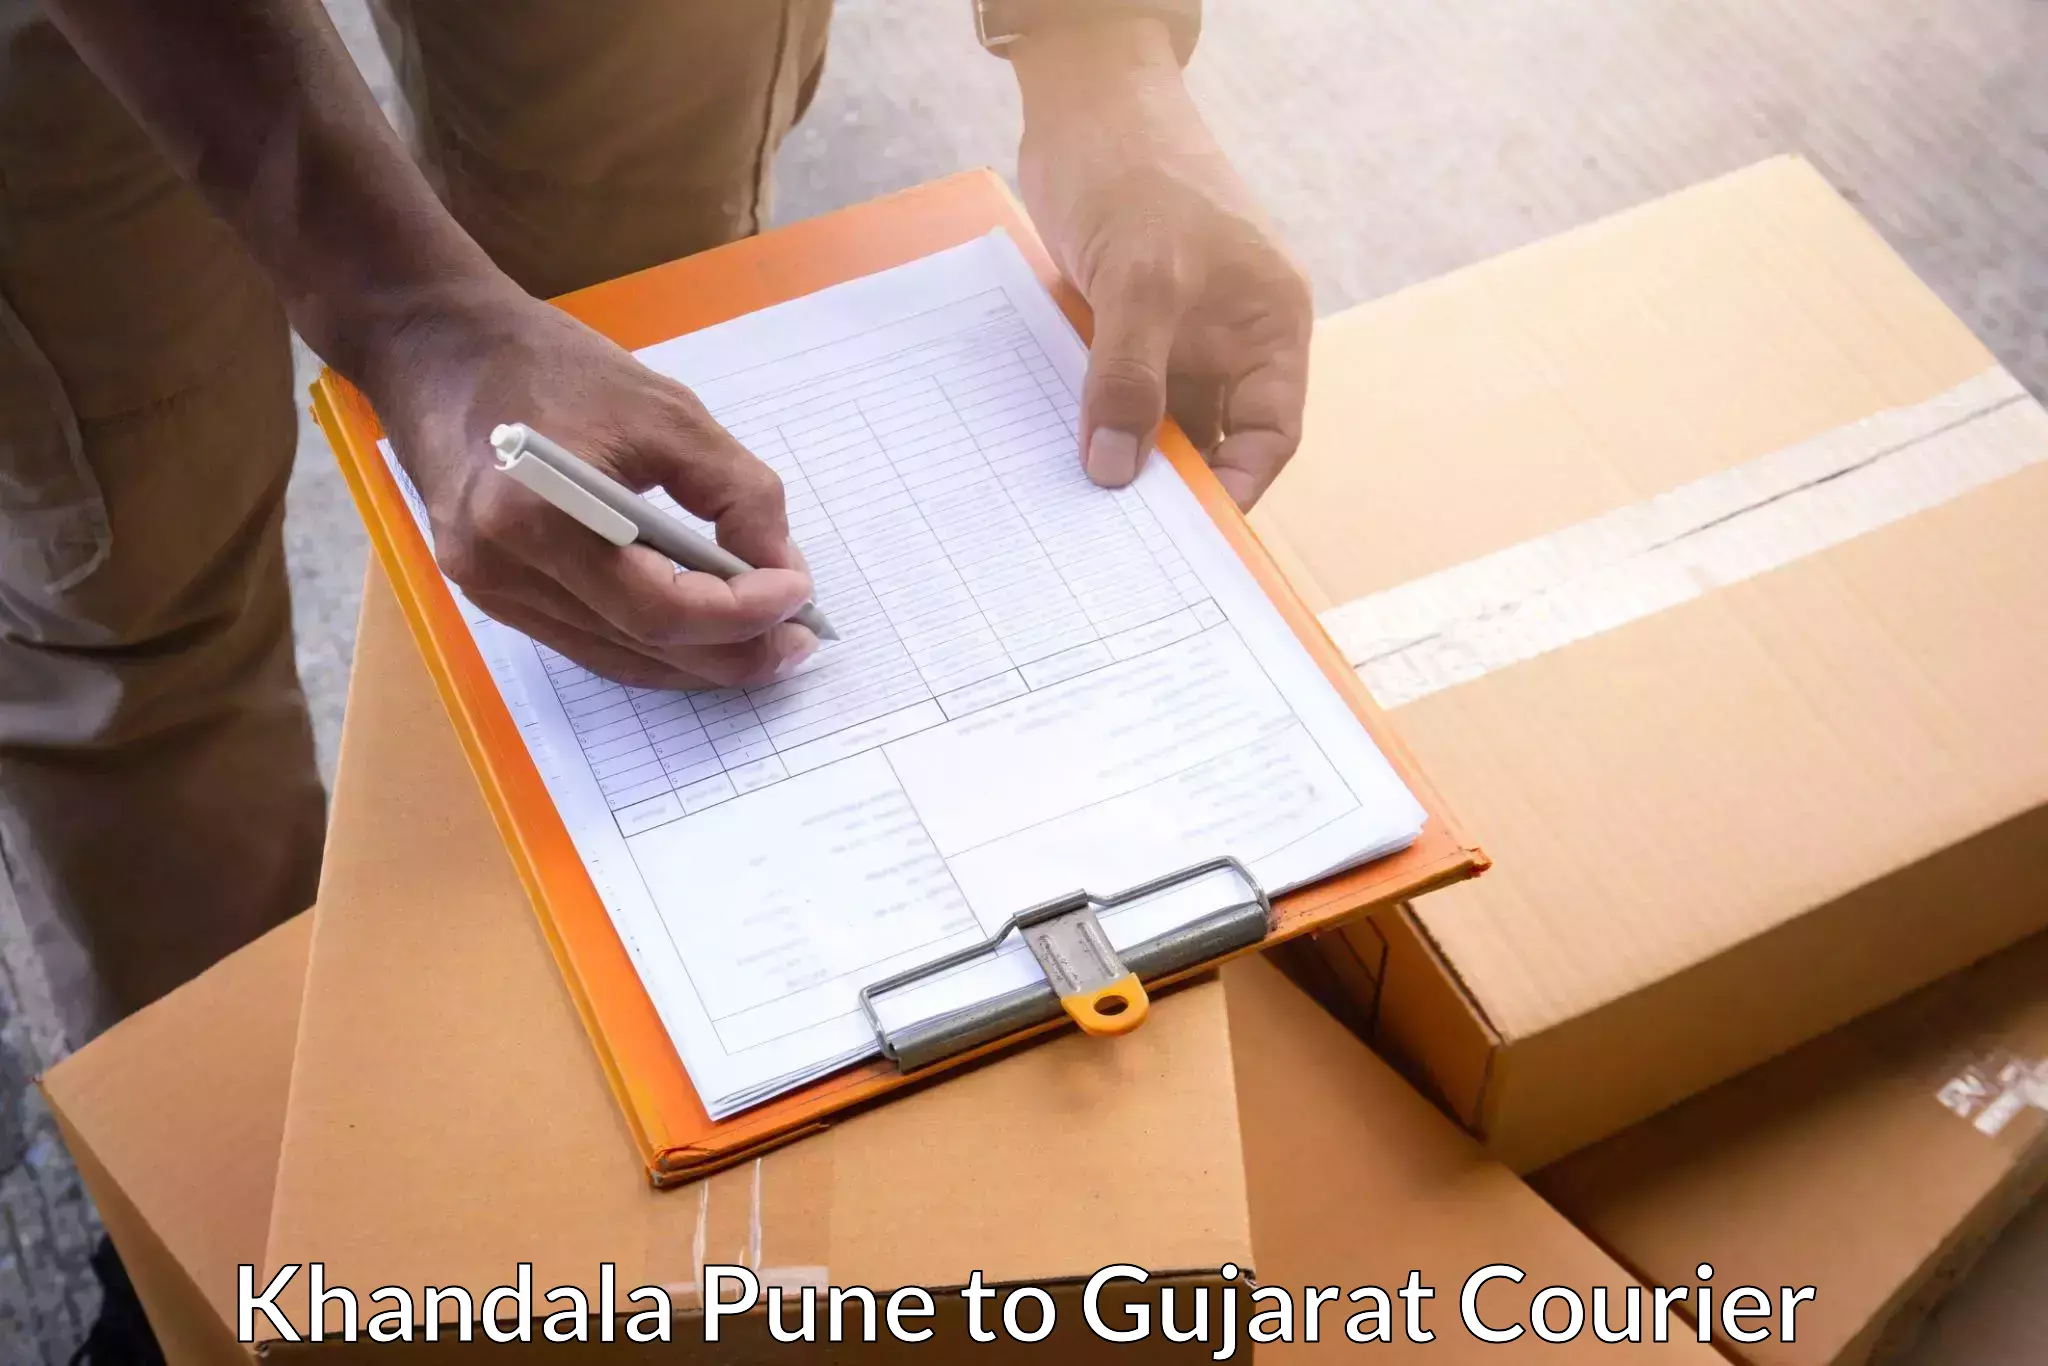 Courier insurance Khandala Pune to Gandhidham